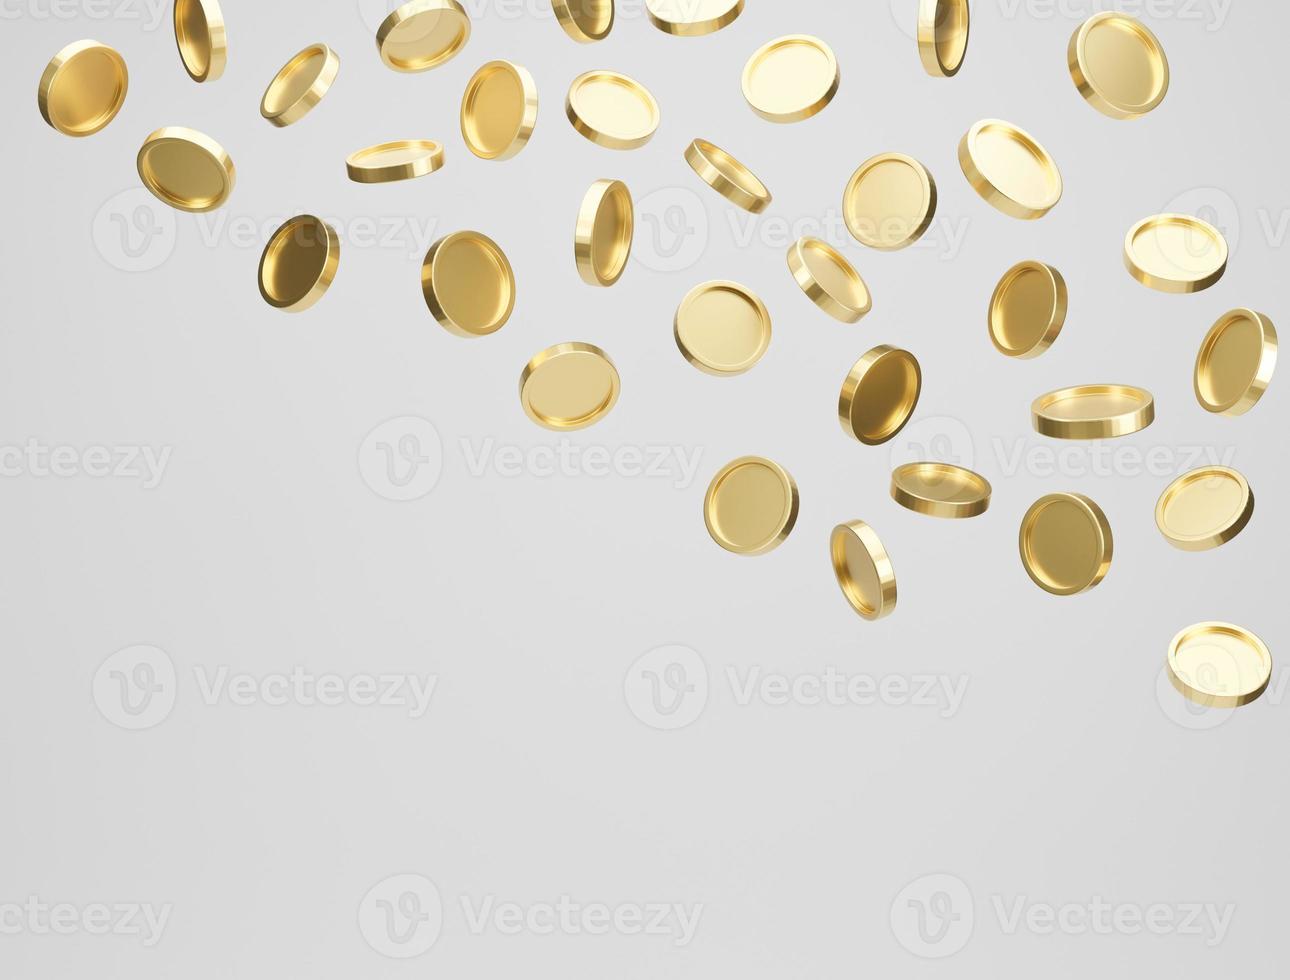 gouden munten vallen of vliegen op een witte achtergrond. jackpot of casino zak concept. 3D-rendering. foto